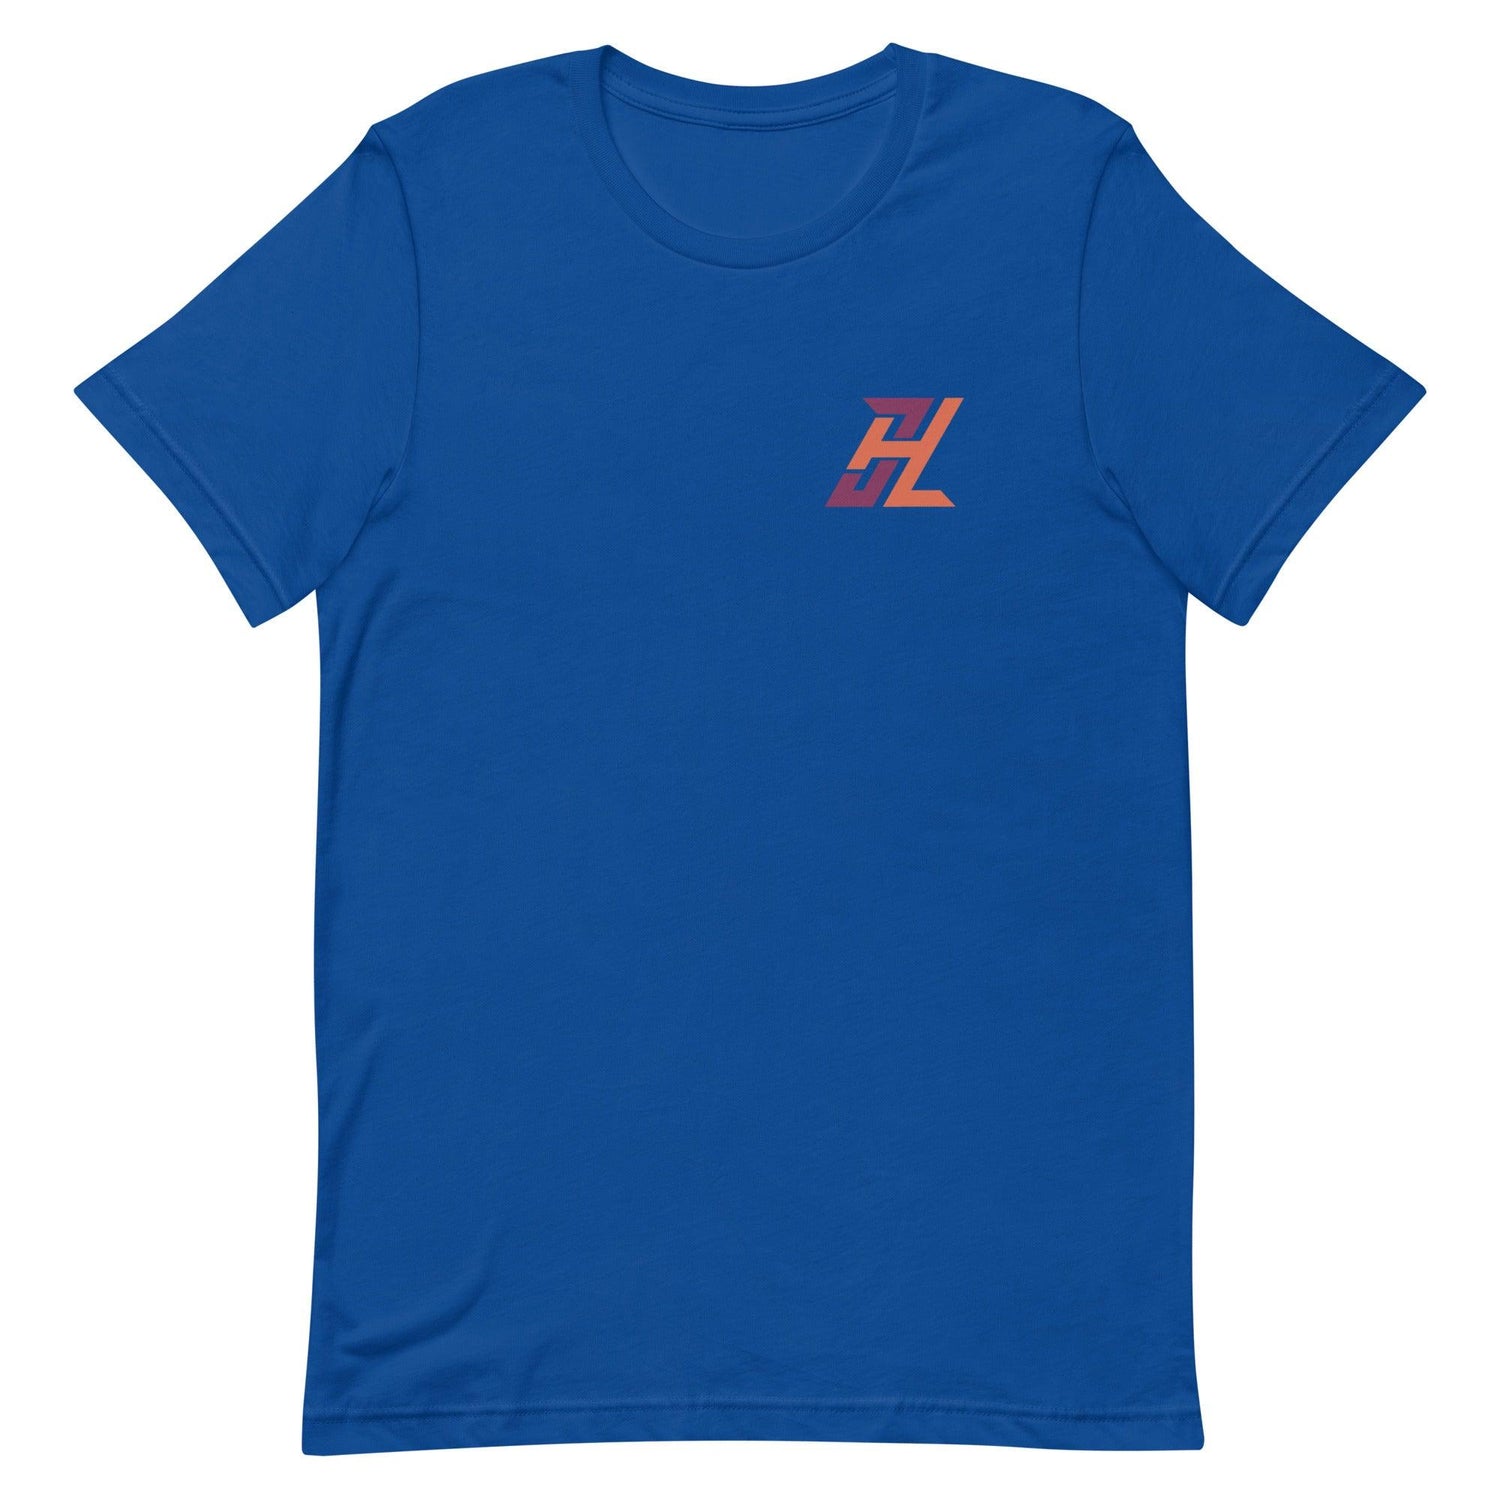 Jack Hurley “JH” t-shirt - Fan Arch